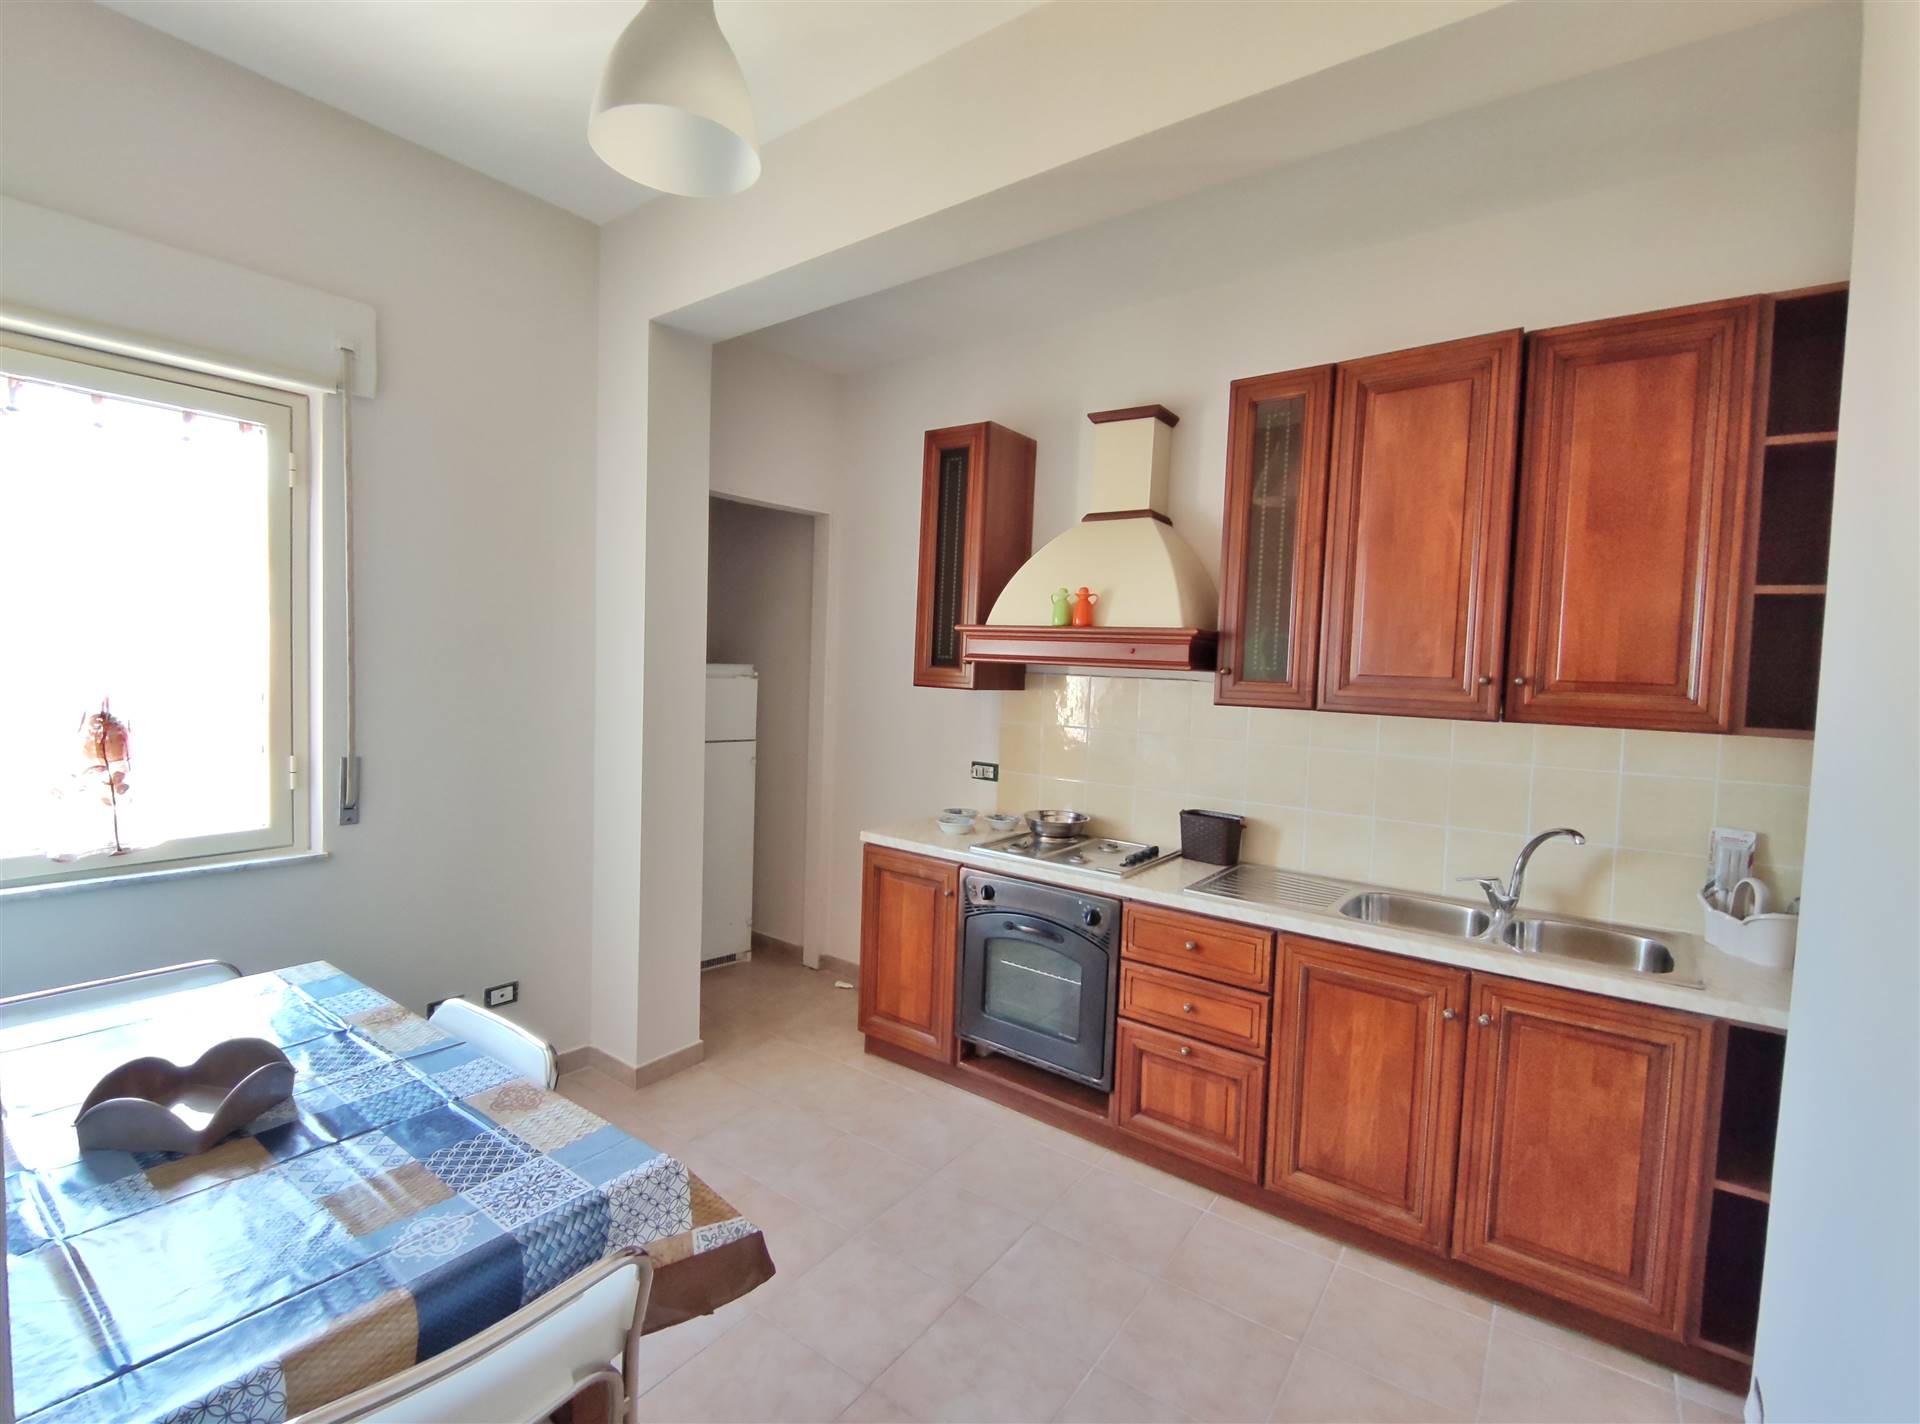 Appartamento in affitto a Palermo, 2 locali, zona Località: CORSO TUKORY, prezzo € 450 | PortaleAgenzieImmobiliari.it